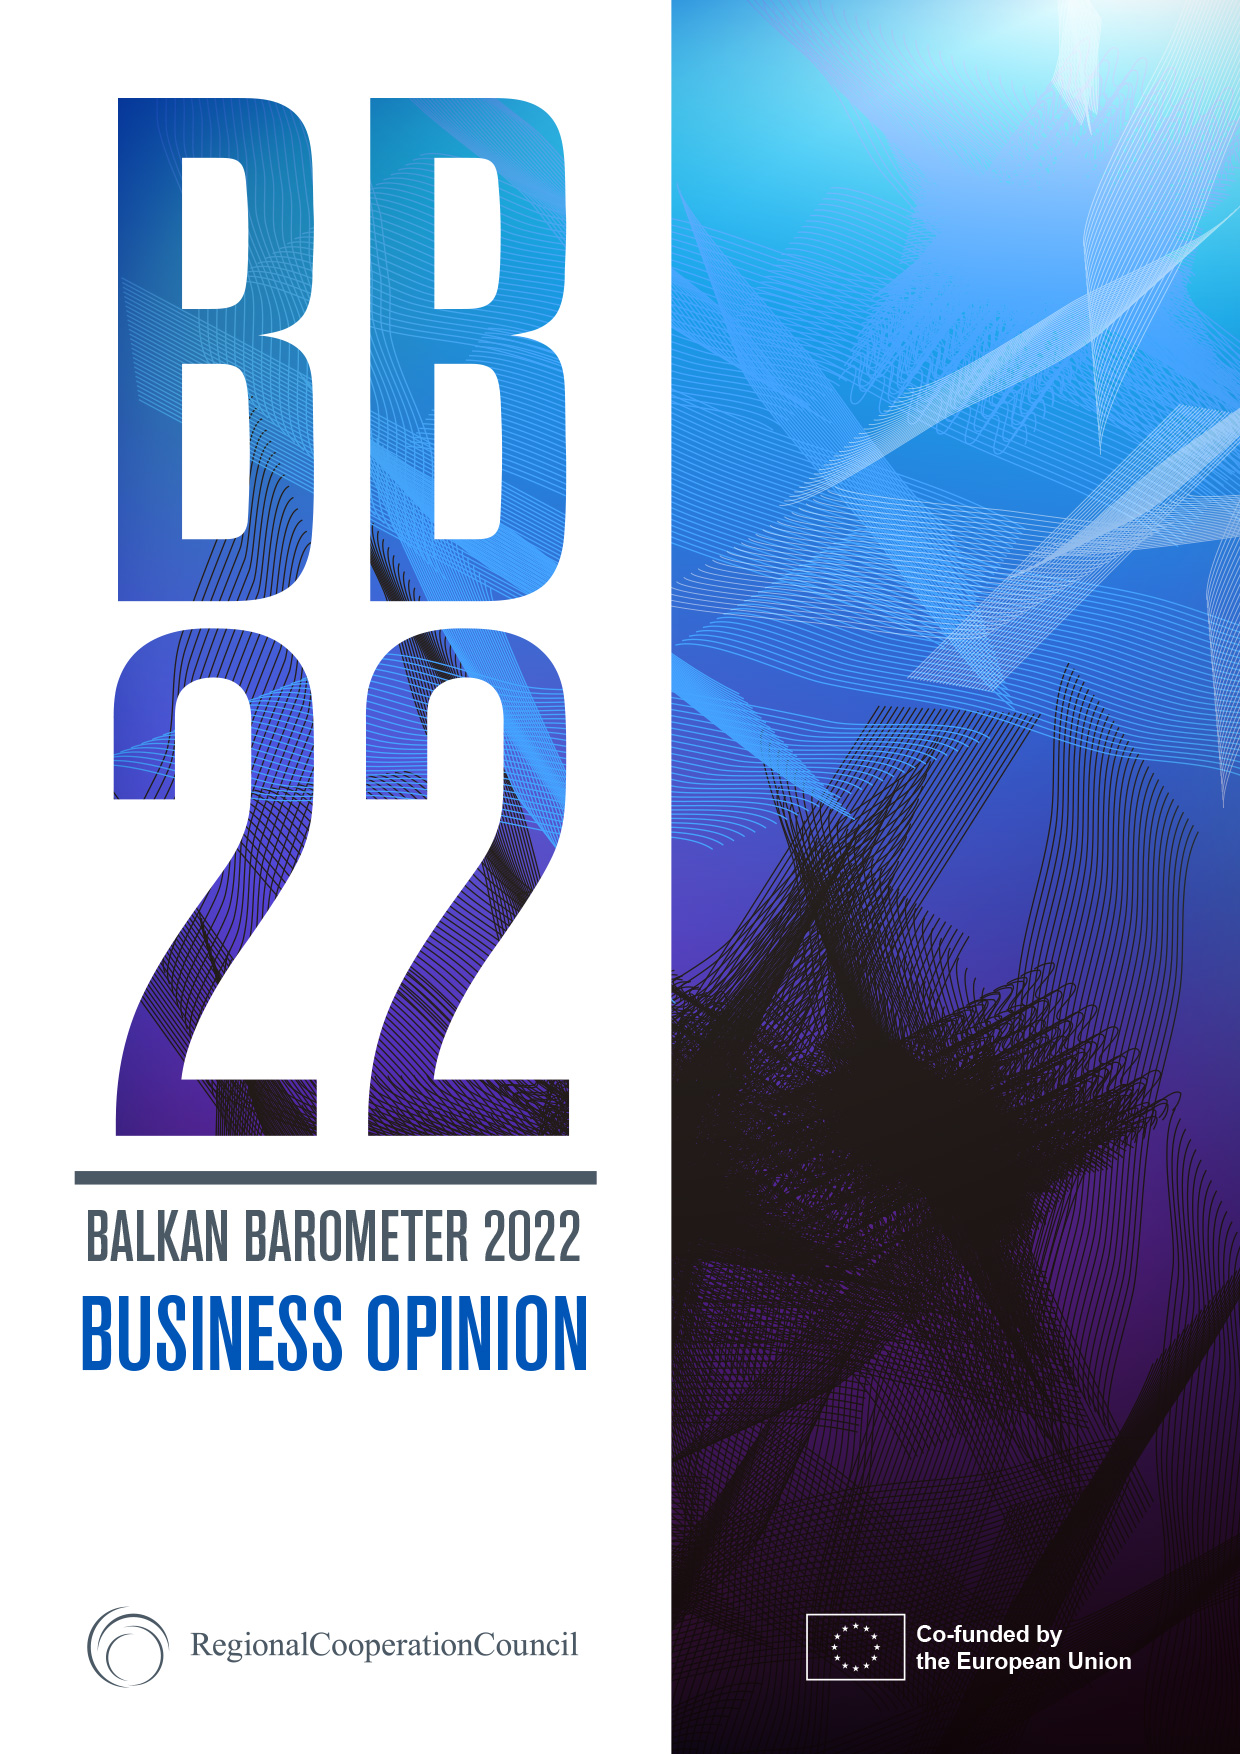 Balkan Barometer Business Opinion 2022 